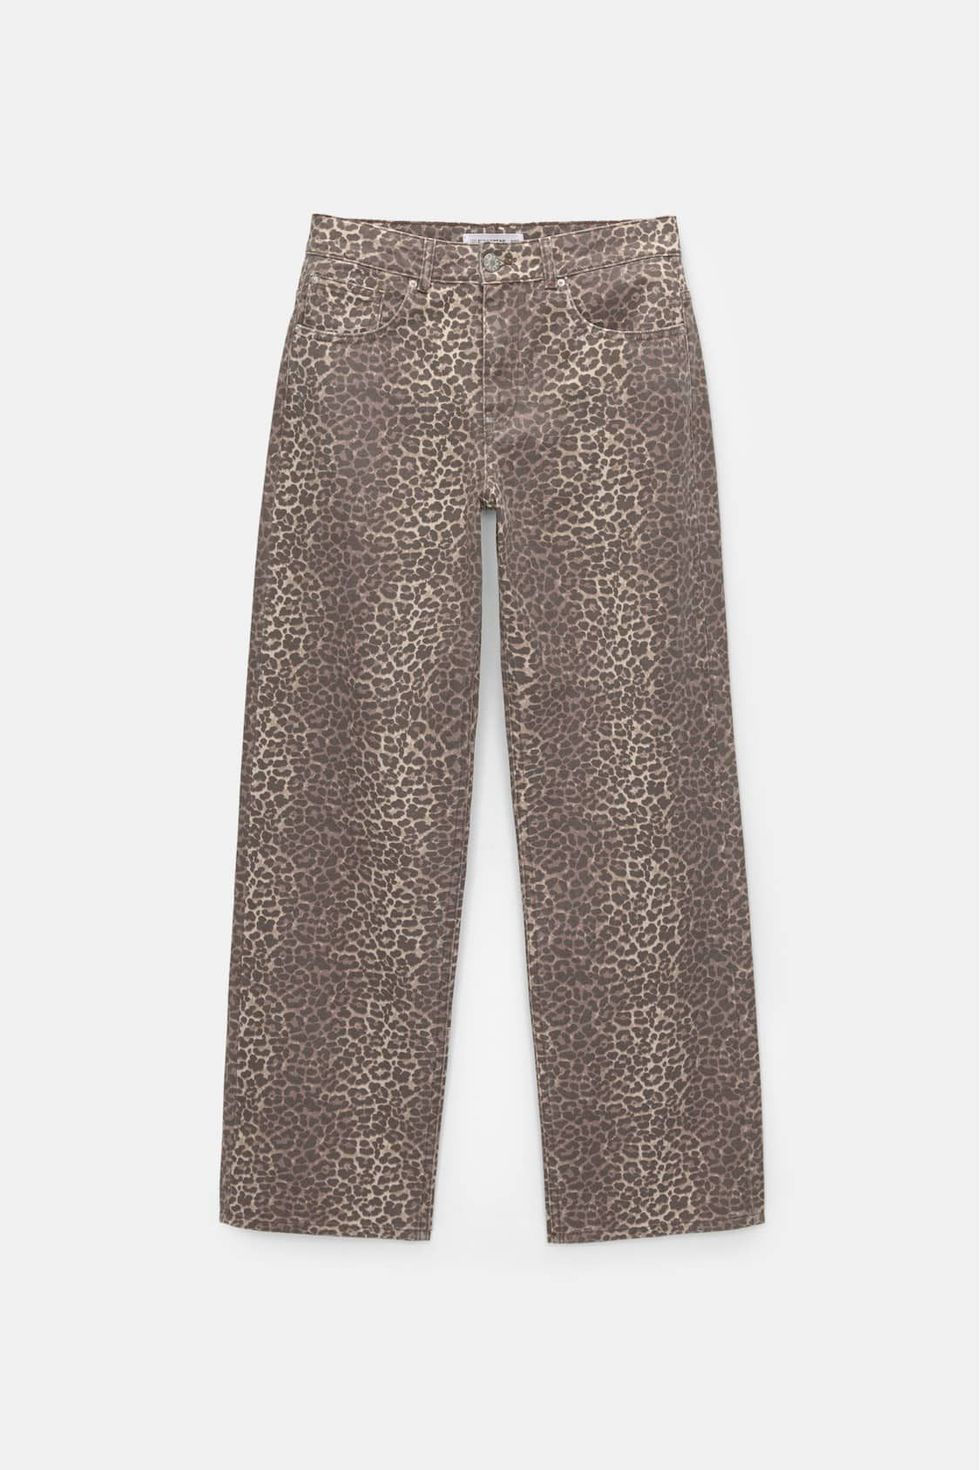 Pantalón estampado leopardo